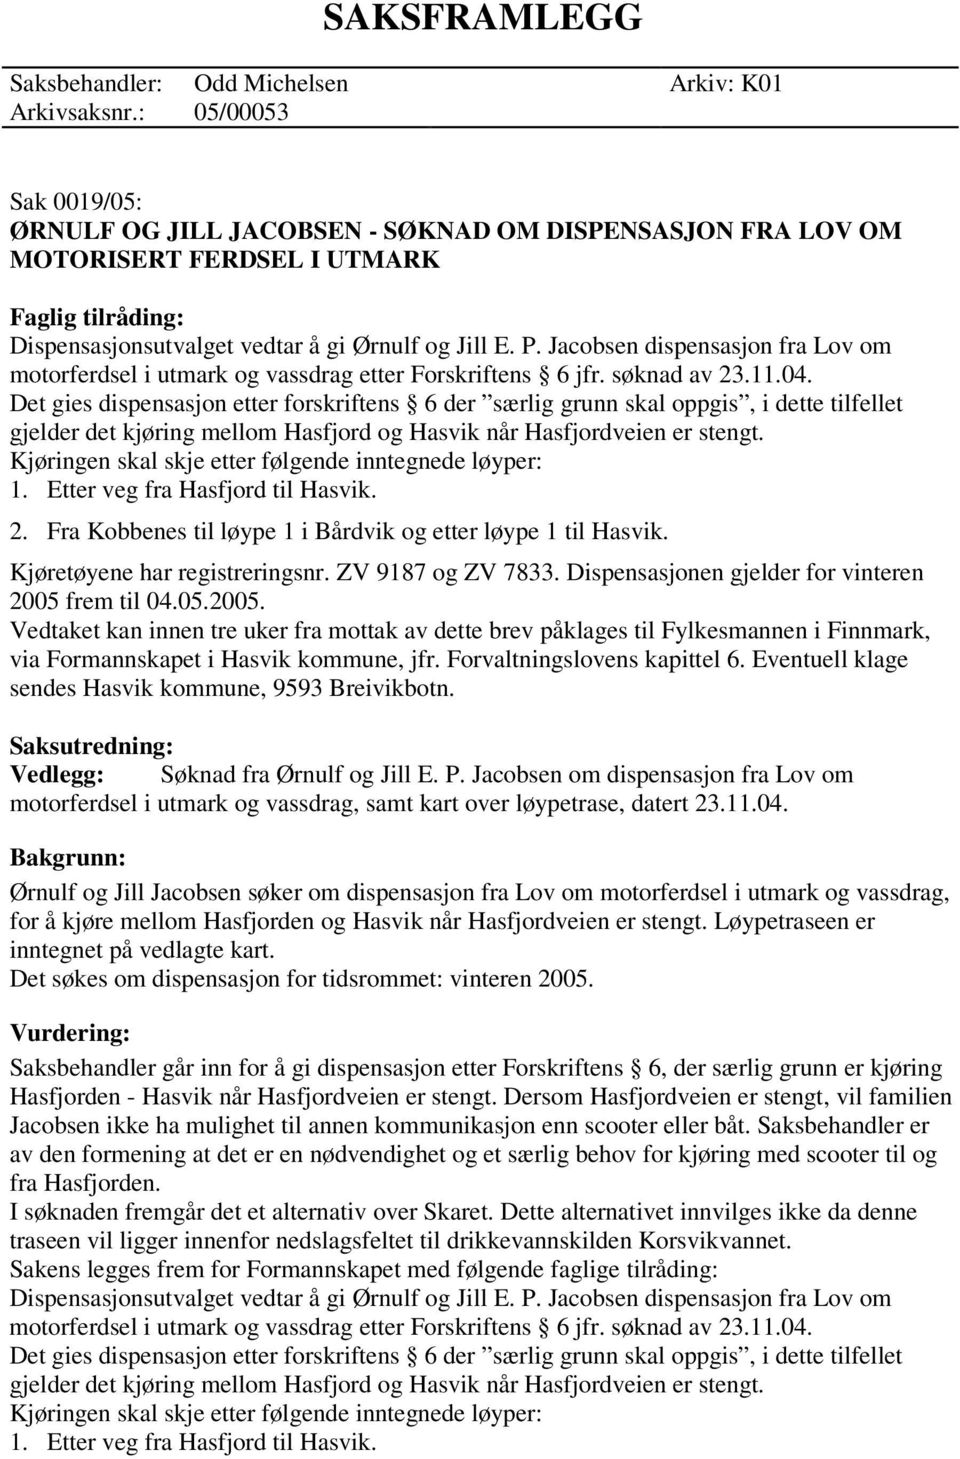 Jacobsen dispensasjon fra Lov om motorferdsel i utmark og vassdrag etter Forskriftens 6 jfr. søknad av 23.11.04.